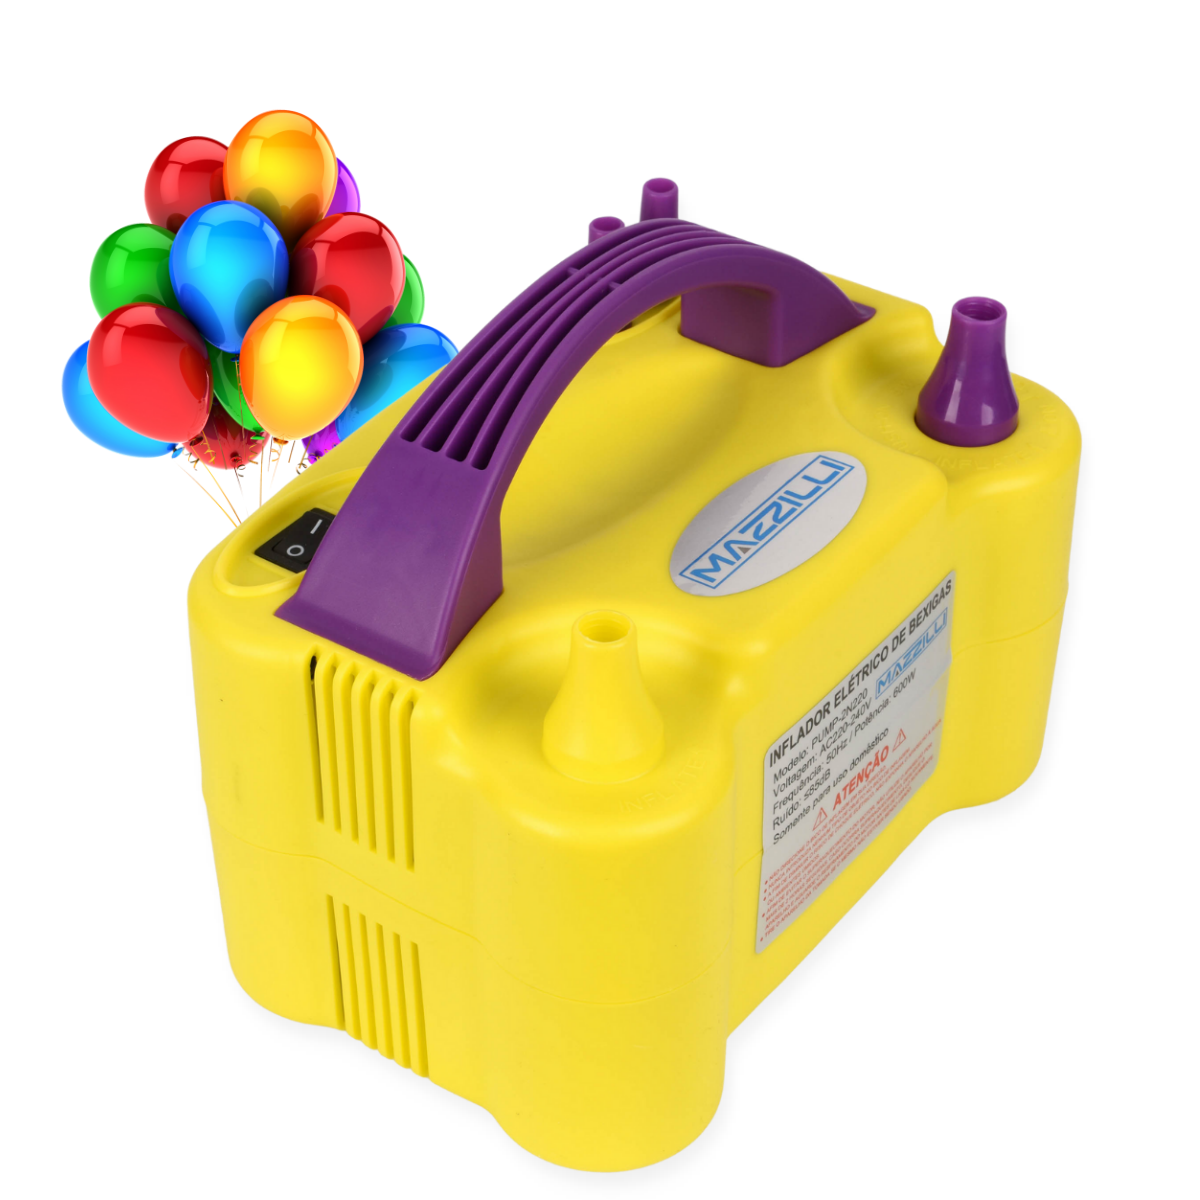 Inflador Compressor Balão Bexiga 2 Bico Festa Aniversário:Amarelo110v